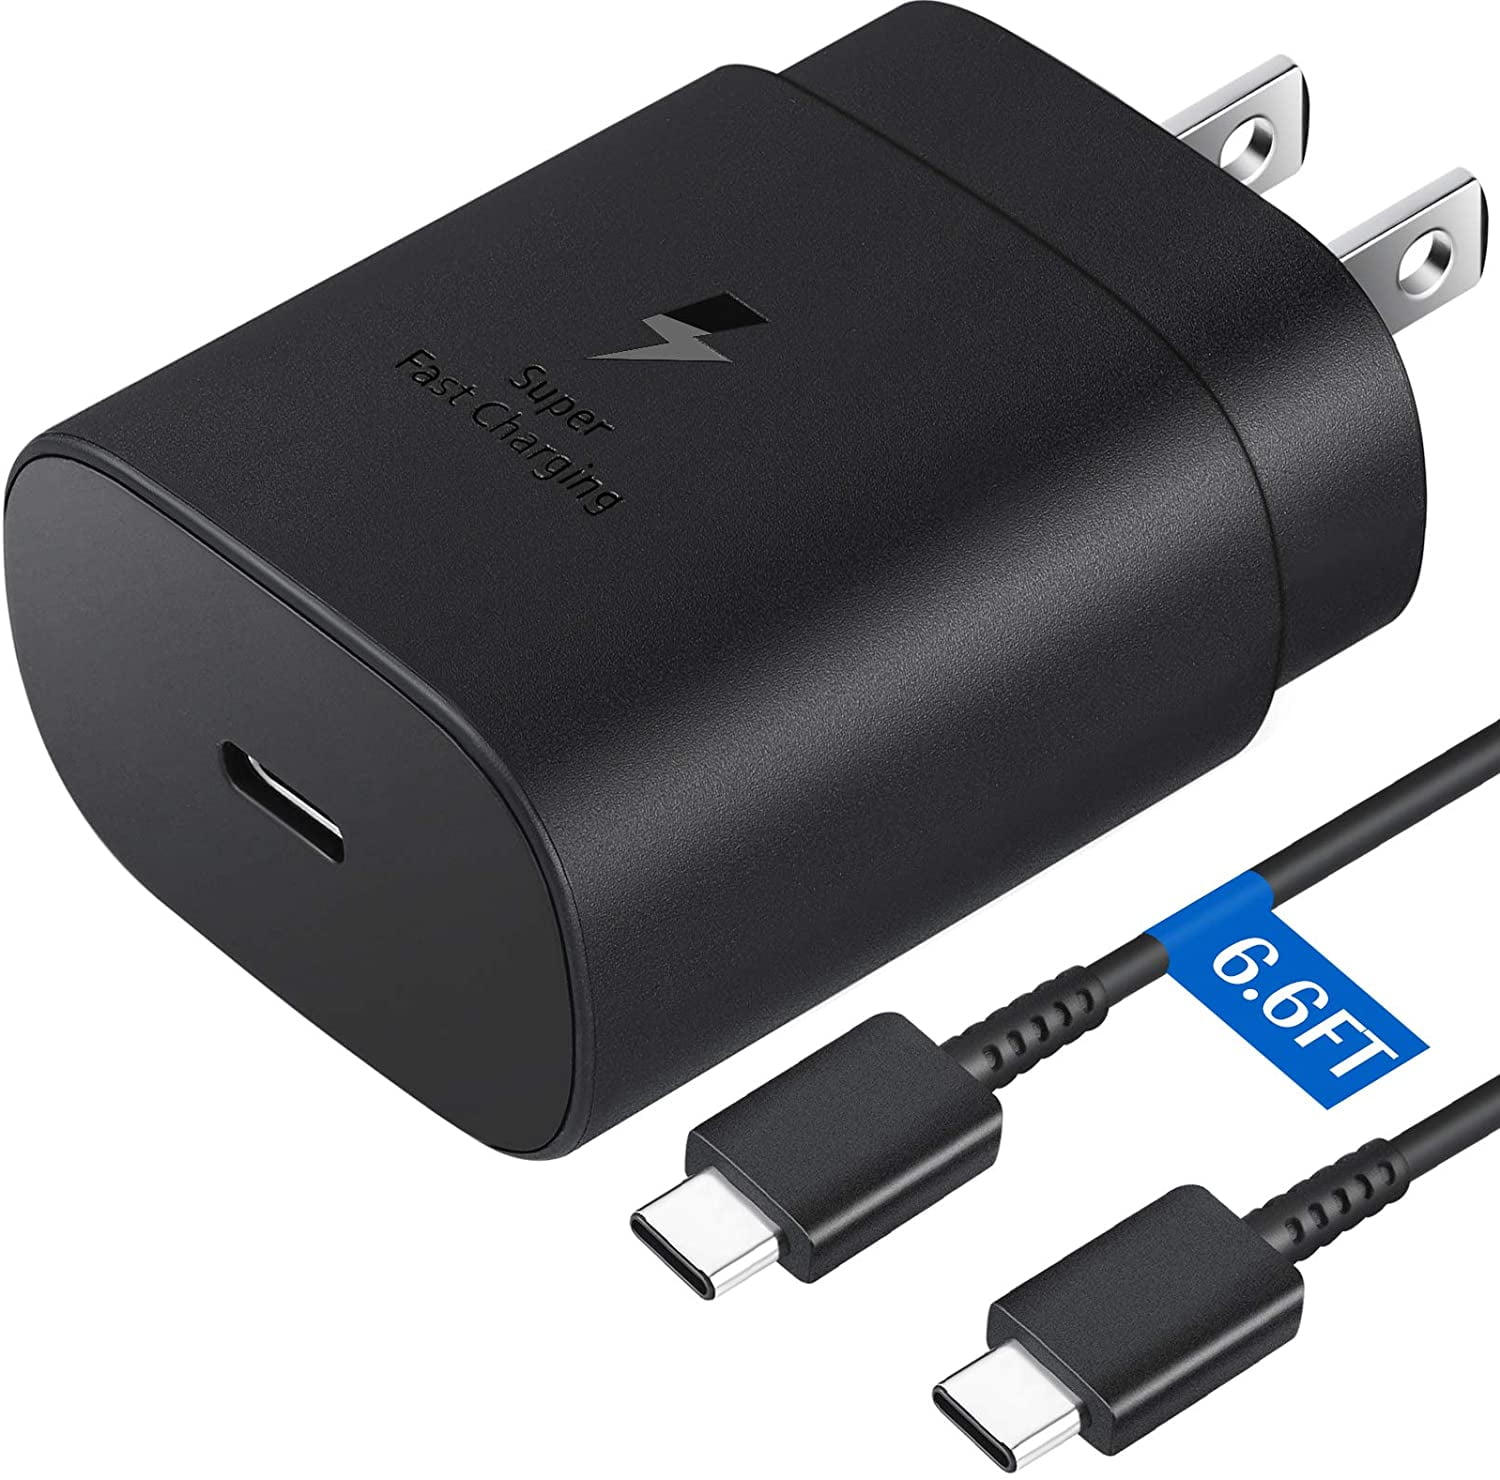 Câble micro USB rapide 5A type C charge Huawei câble USB C chargeur de  téléphone